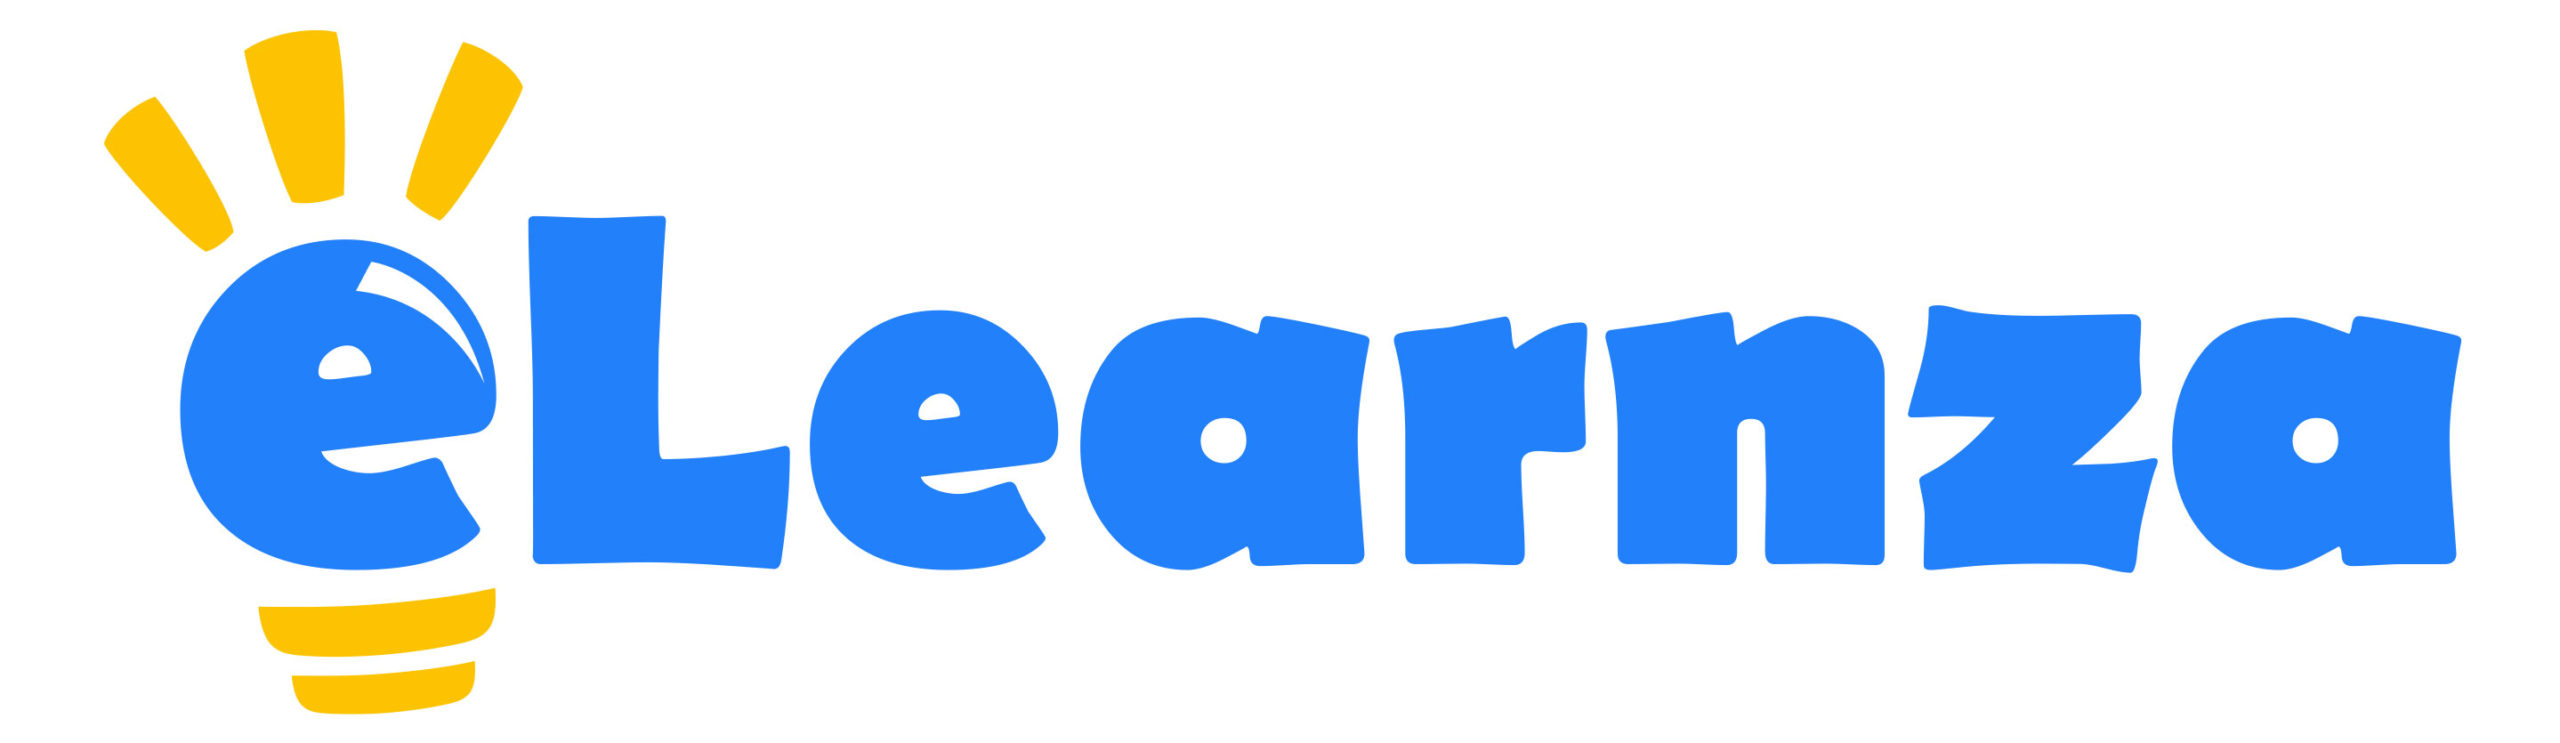 eLearnza Logo